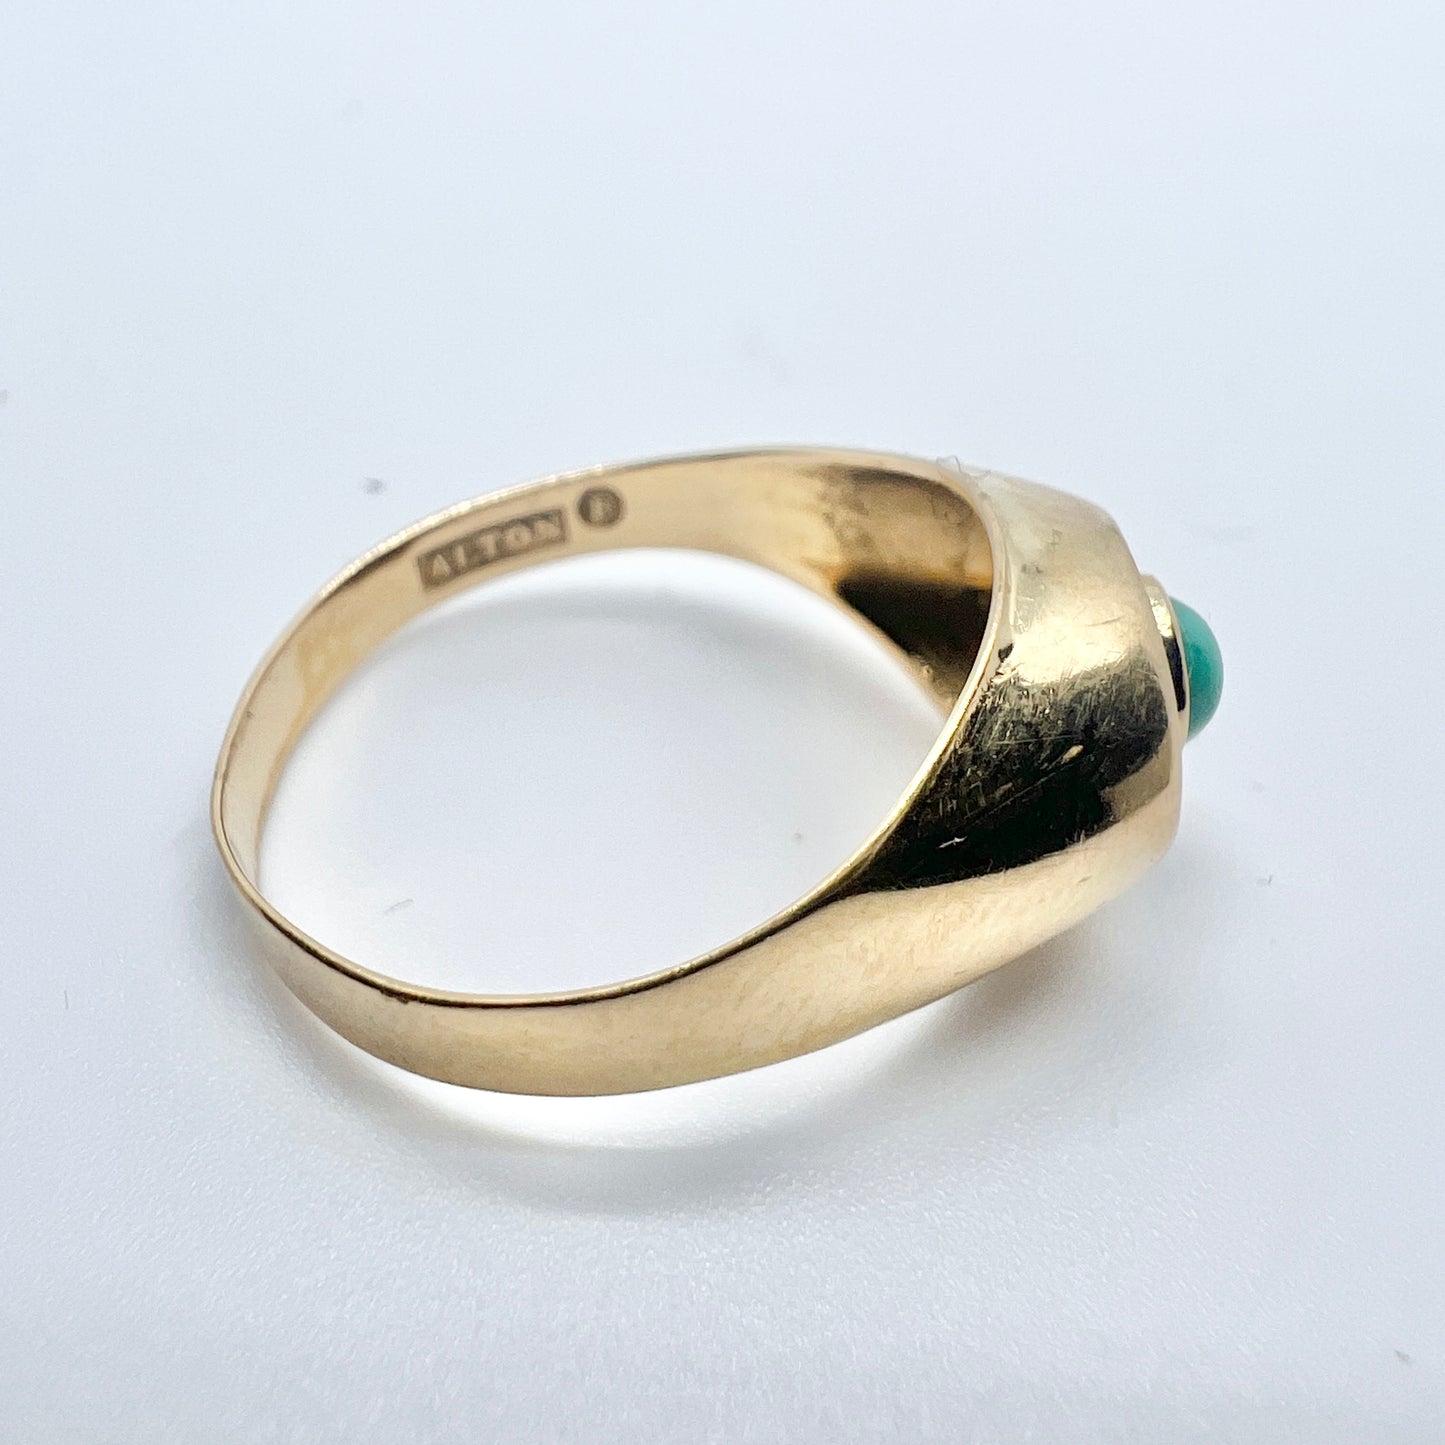 Alton, Sweden 1965. Vintage 18k Gold Turquoise Ring.